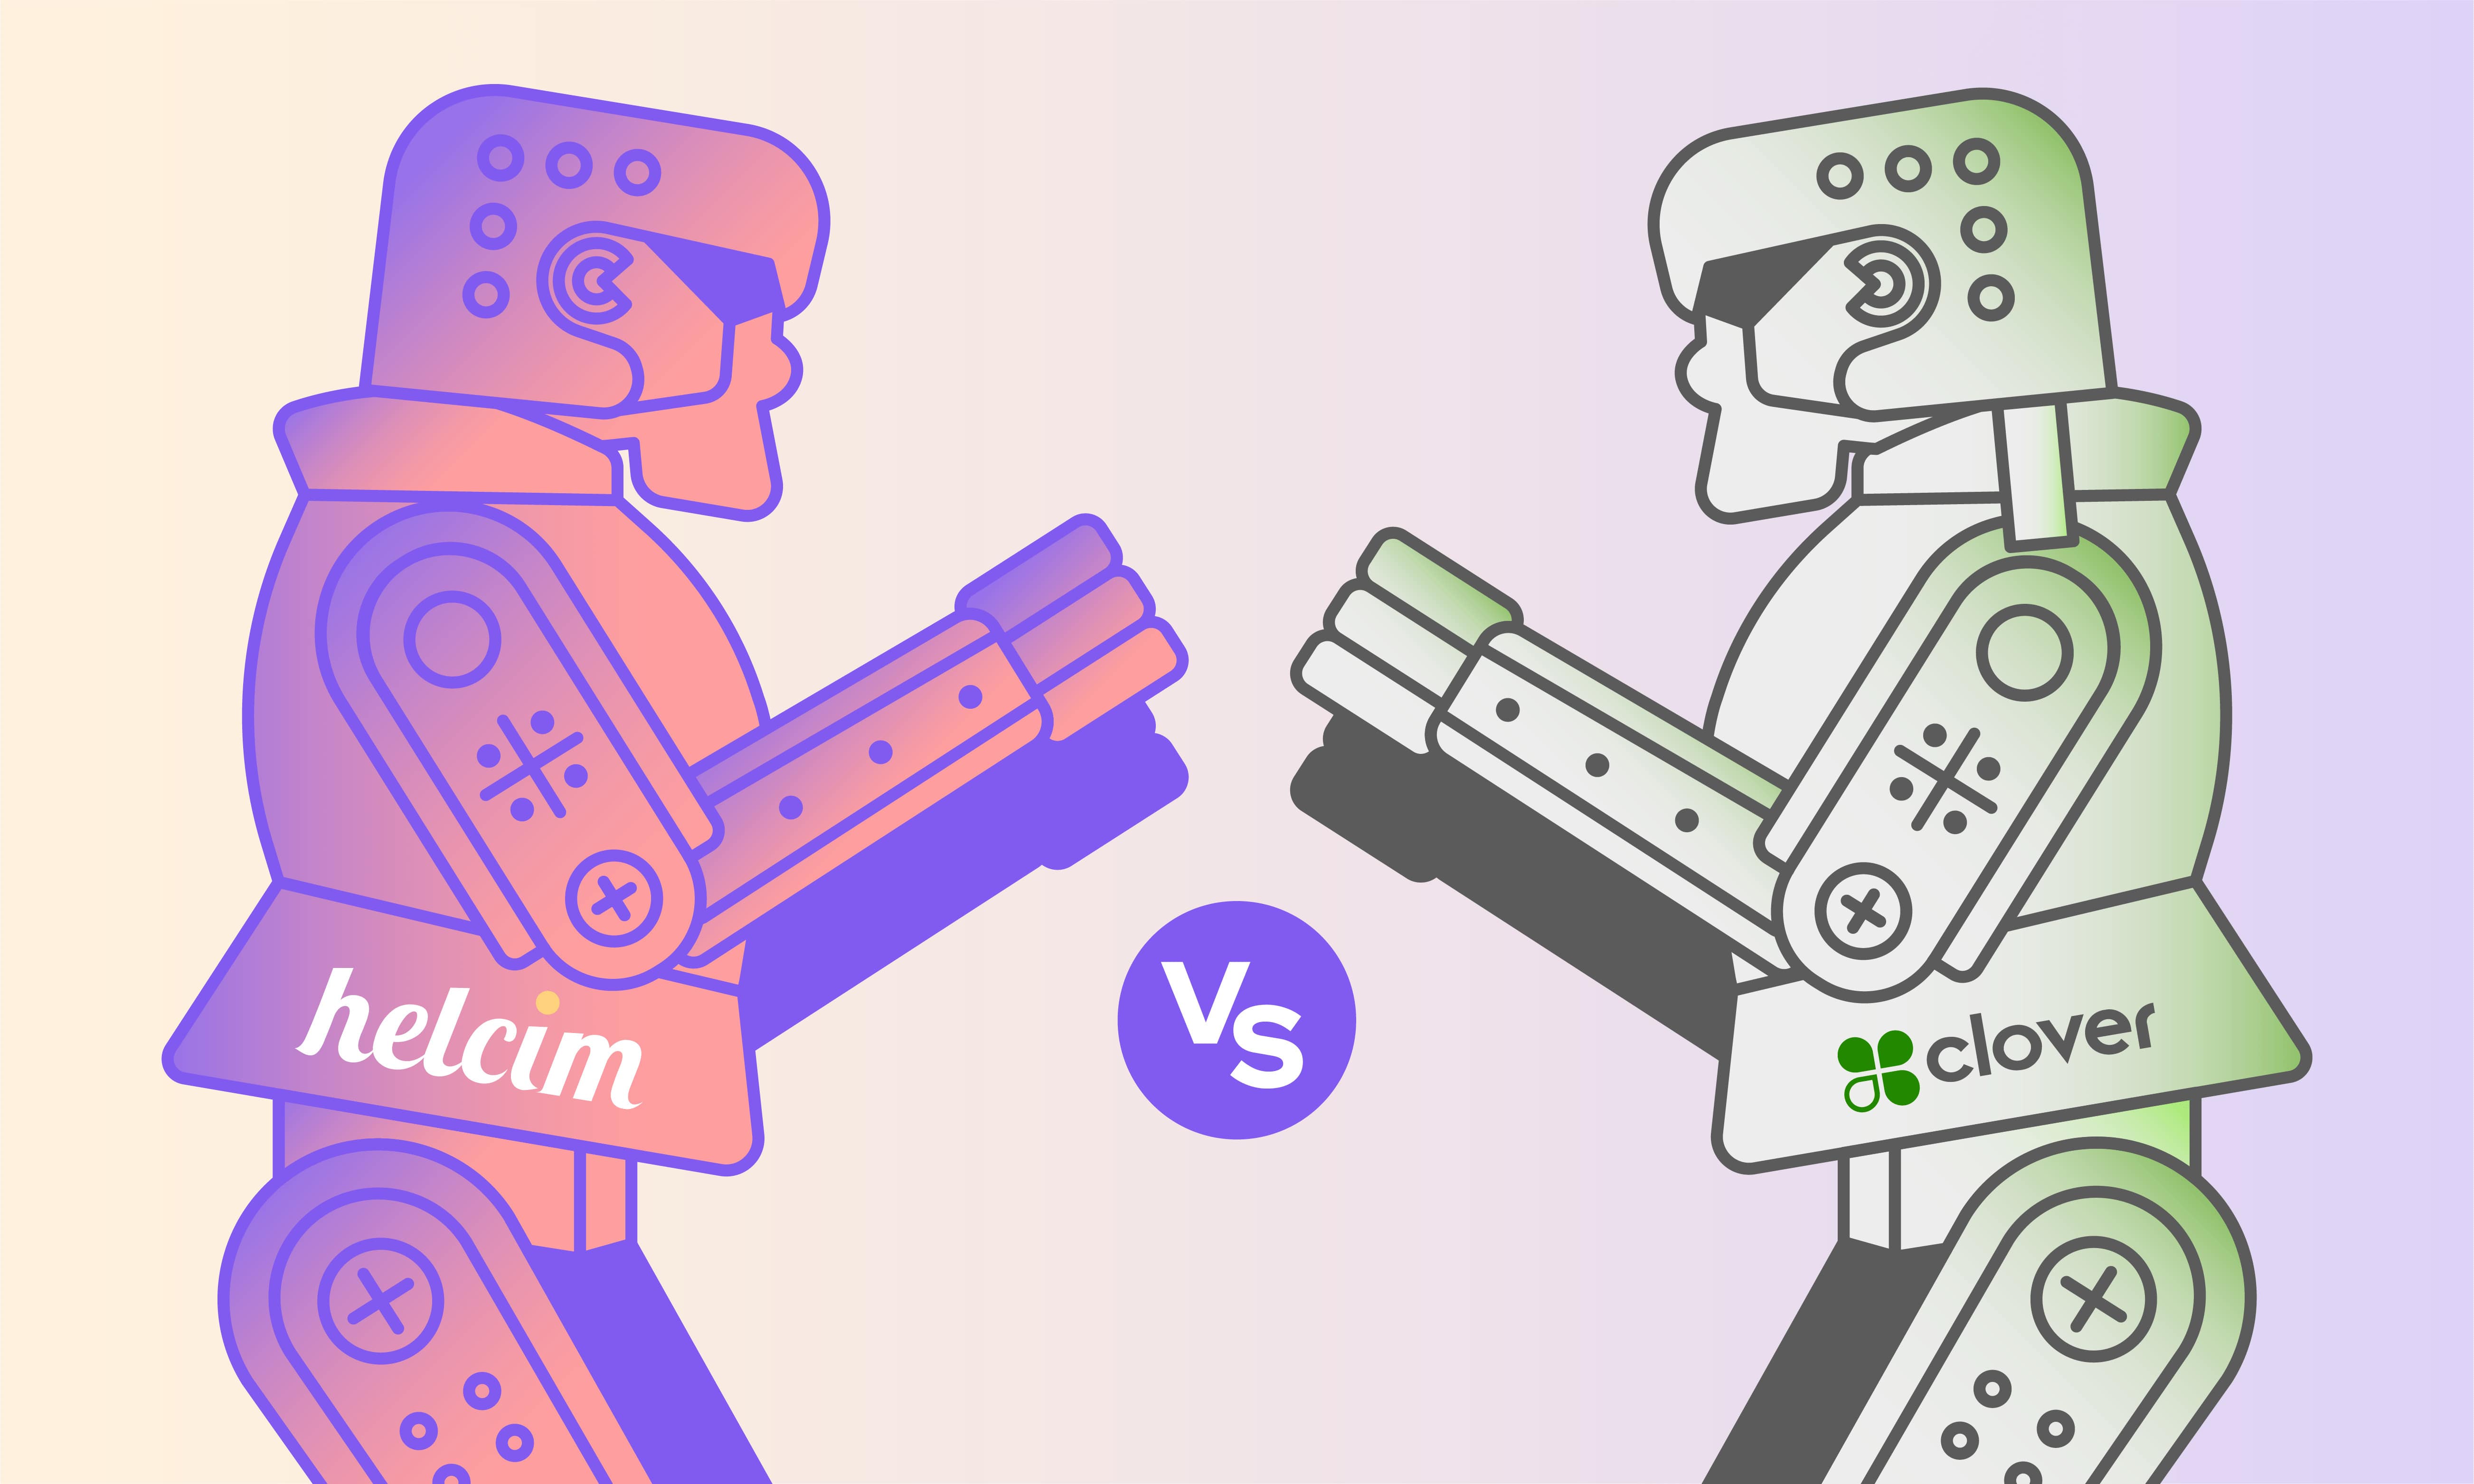 Helcim robot vs. Clover robot